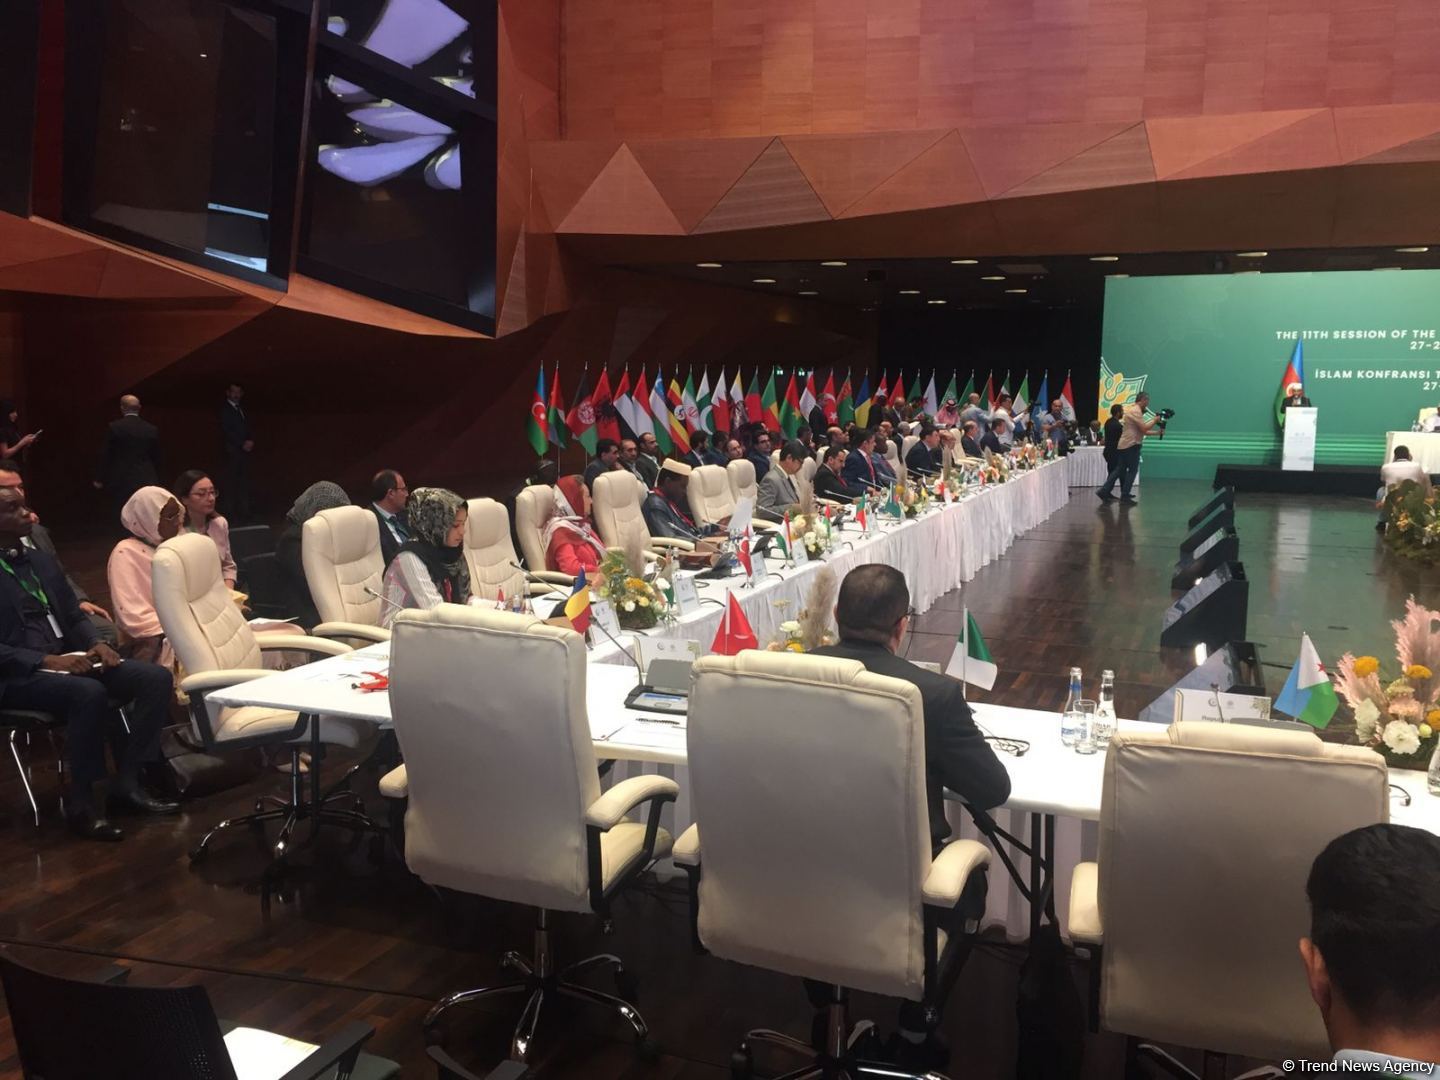 В Баку проходит 11-я сессия министров туризма стран ОИС (ФОТО)